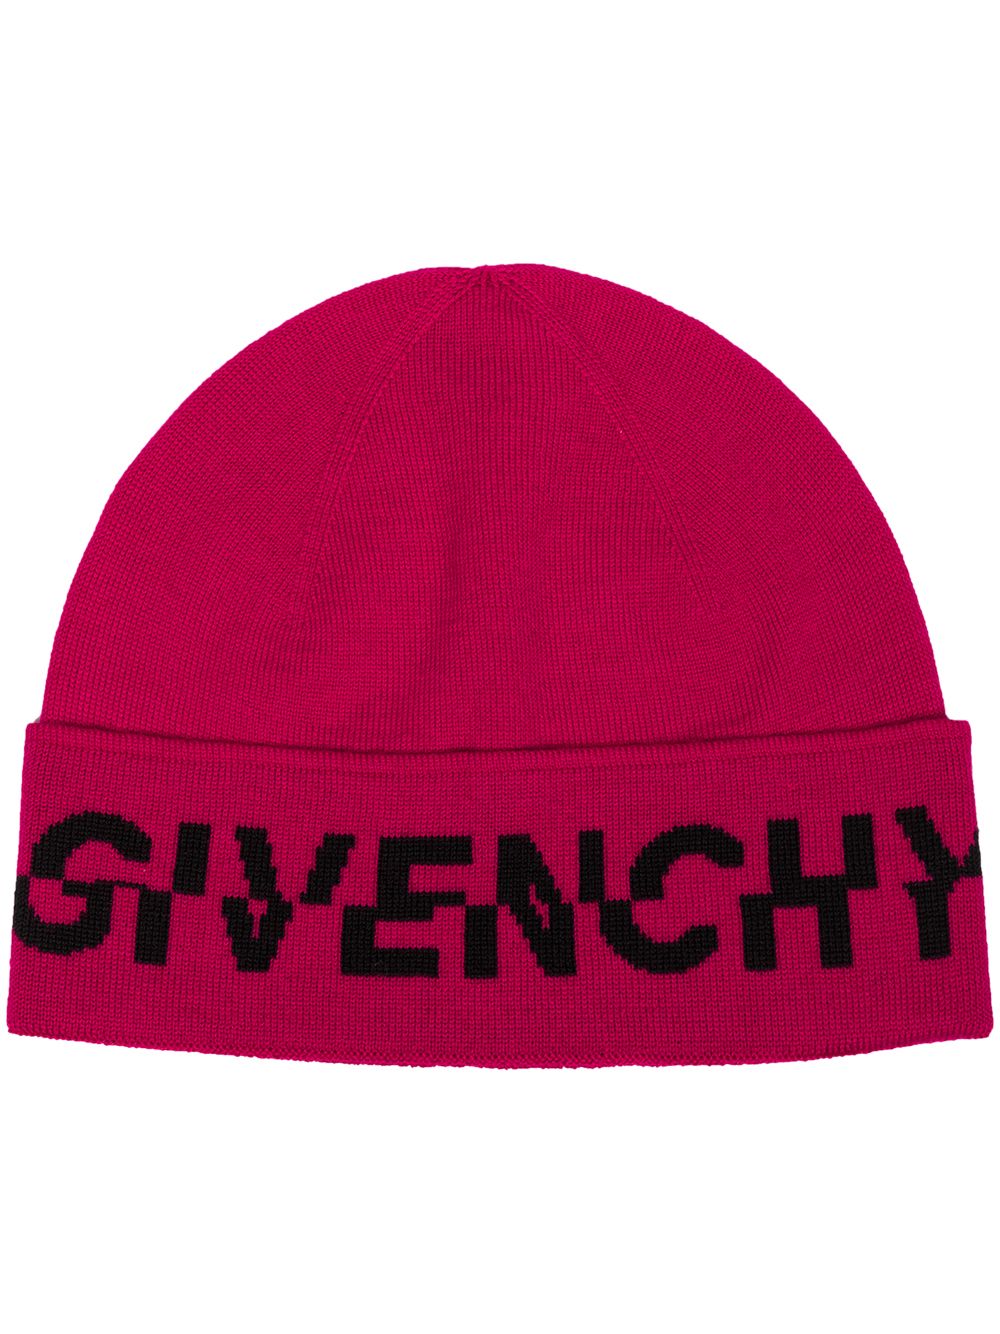 фото Givenchy шапка бини